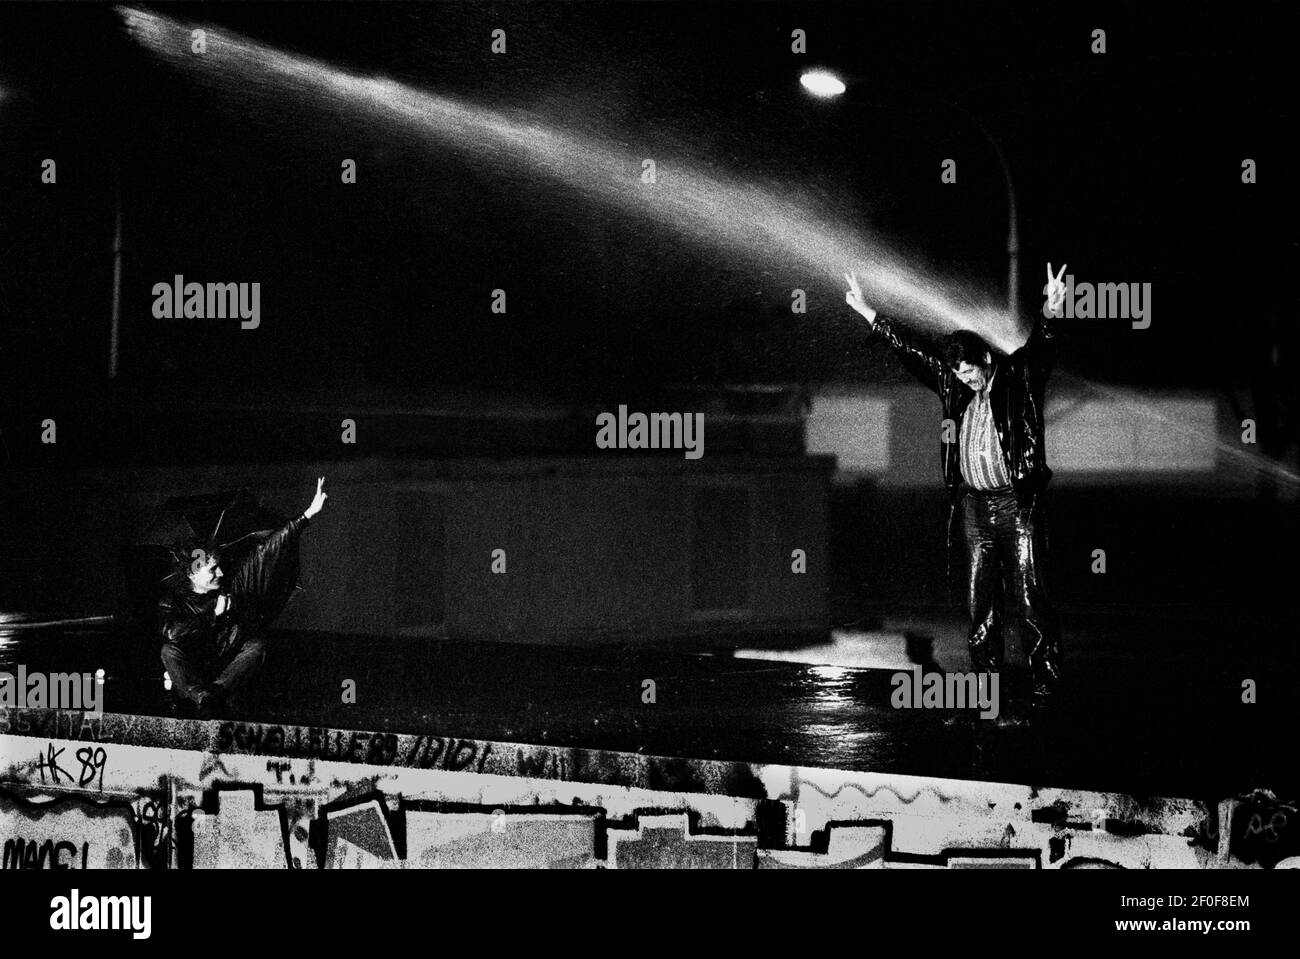 Berlin 9. November 1989. In der Nacht, als die Mauer fiel. Tausende Westberliner kletterten und saßen an der Mauer am Brandenburger Tor, als DDR-Grenzposten versuchten, die Menschen von der Mauer zu schlauchen.COPYRIGHT PHOTO BY BRIAN HARRIS 07808-579804 Stockfoto